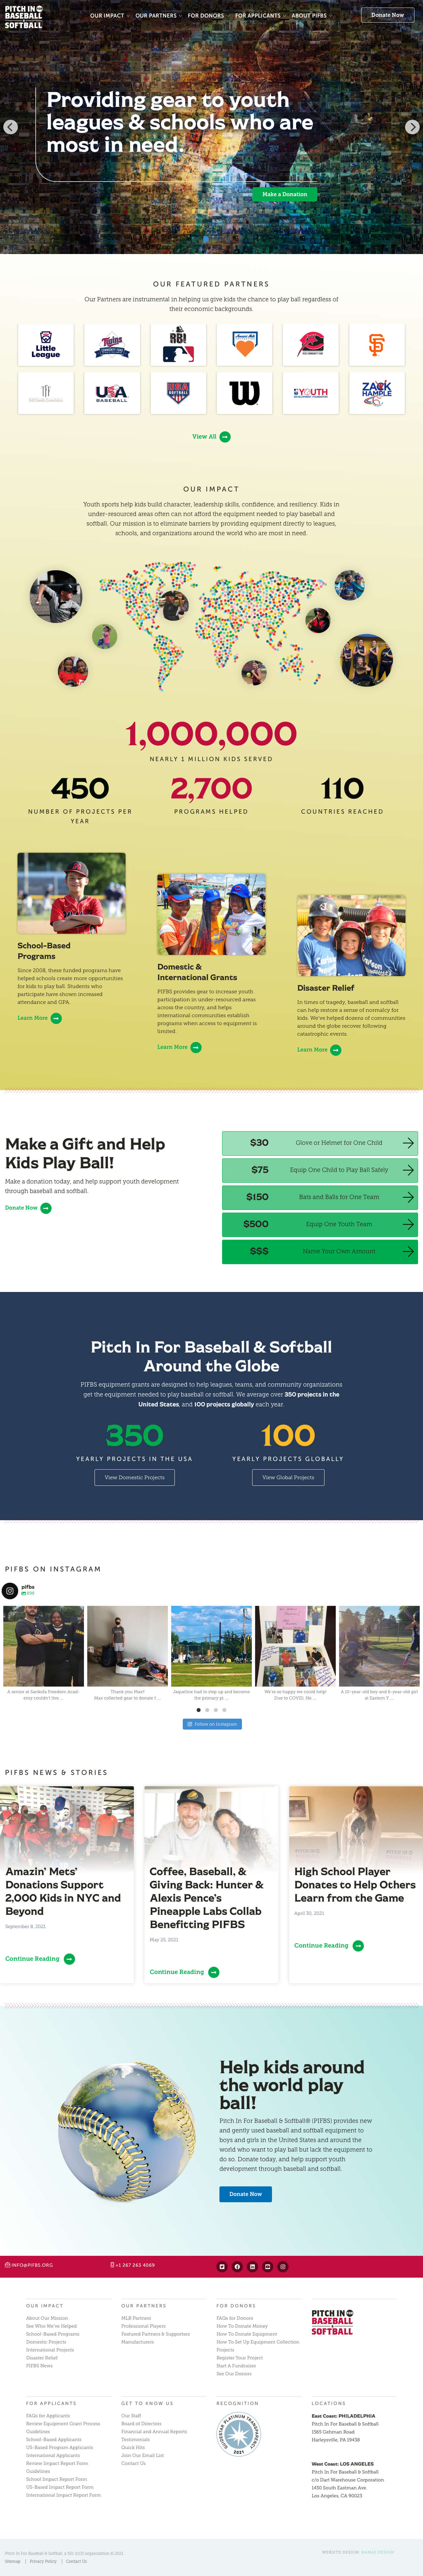 Vega Digital Awards Winner - Website Redesign for Pitch In For Baseball & Softball